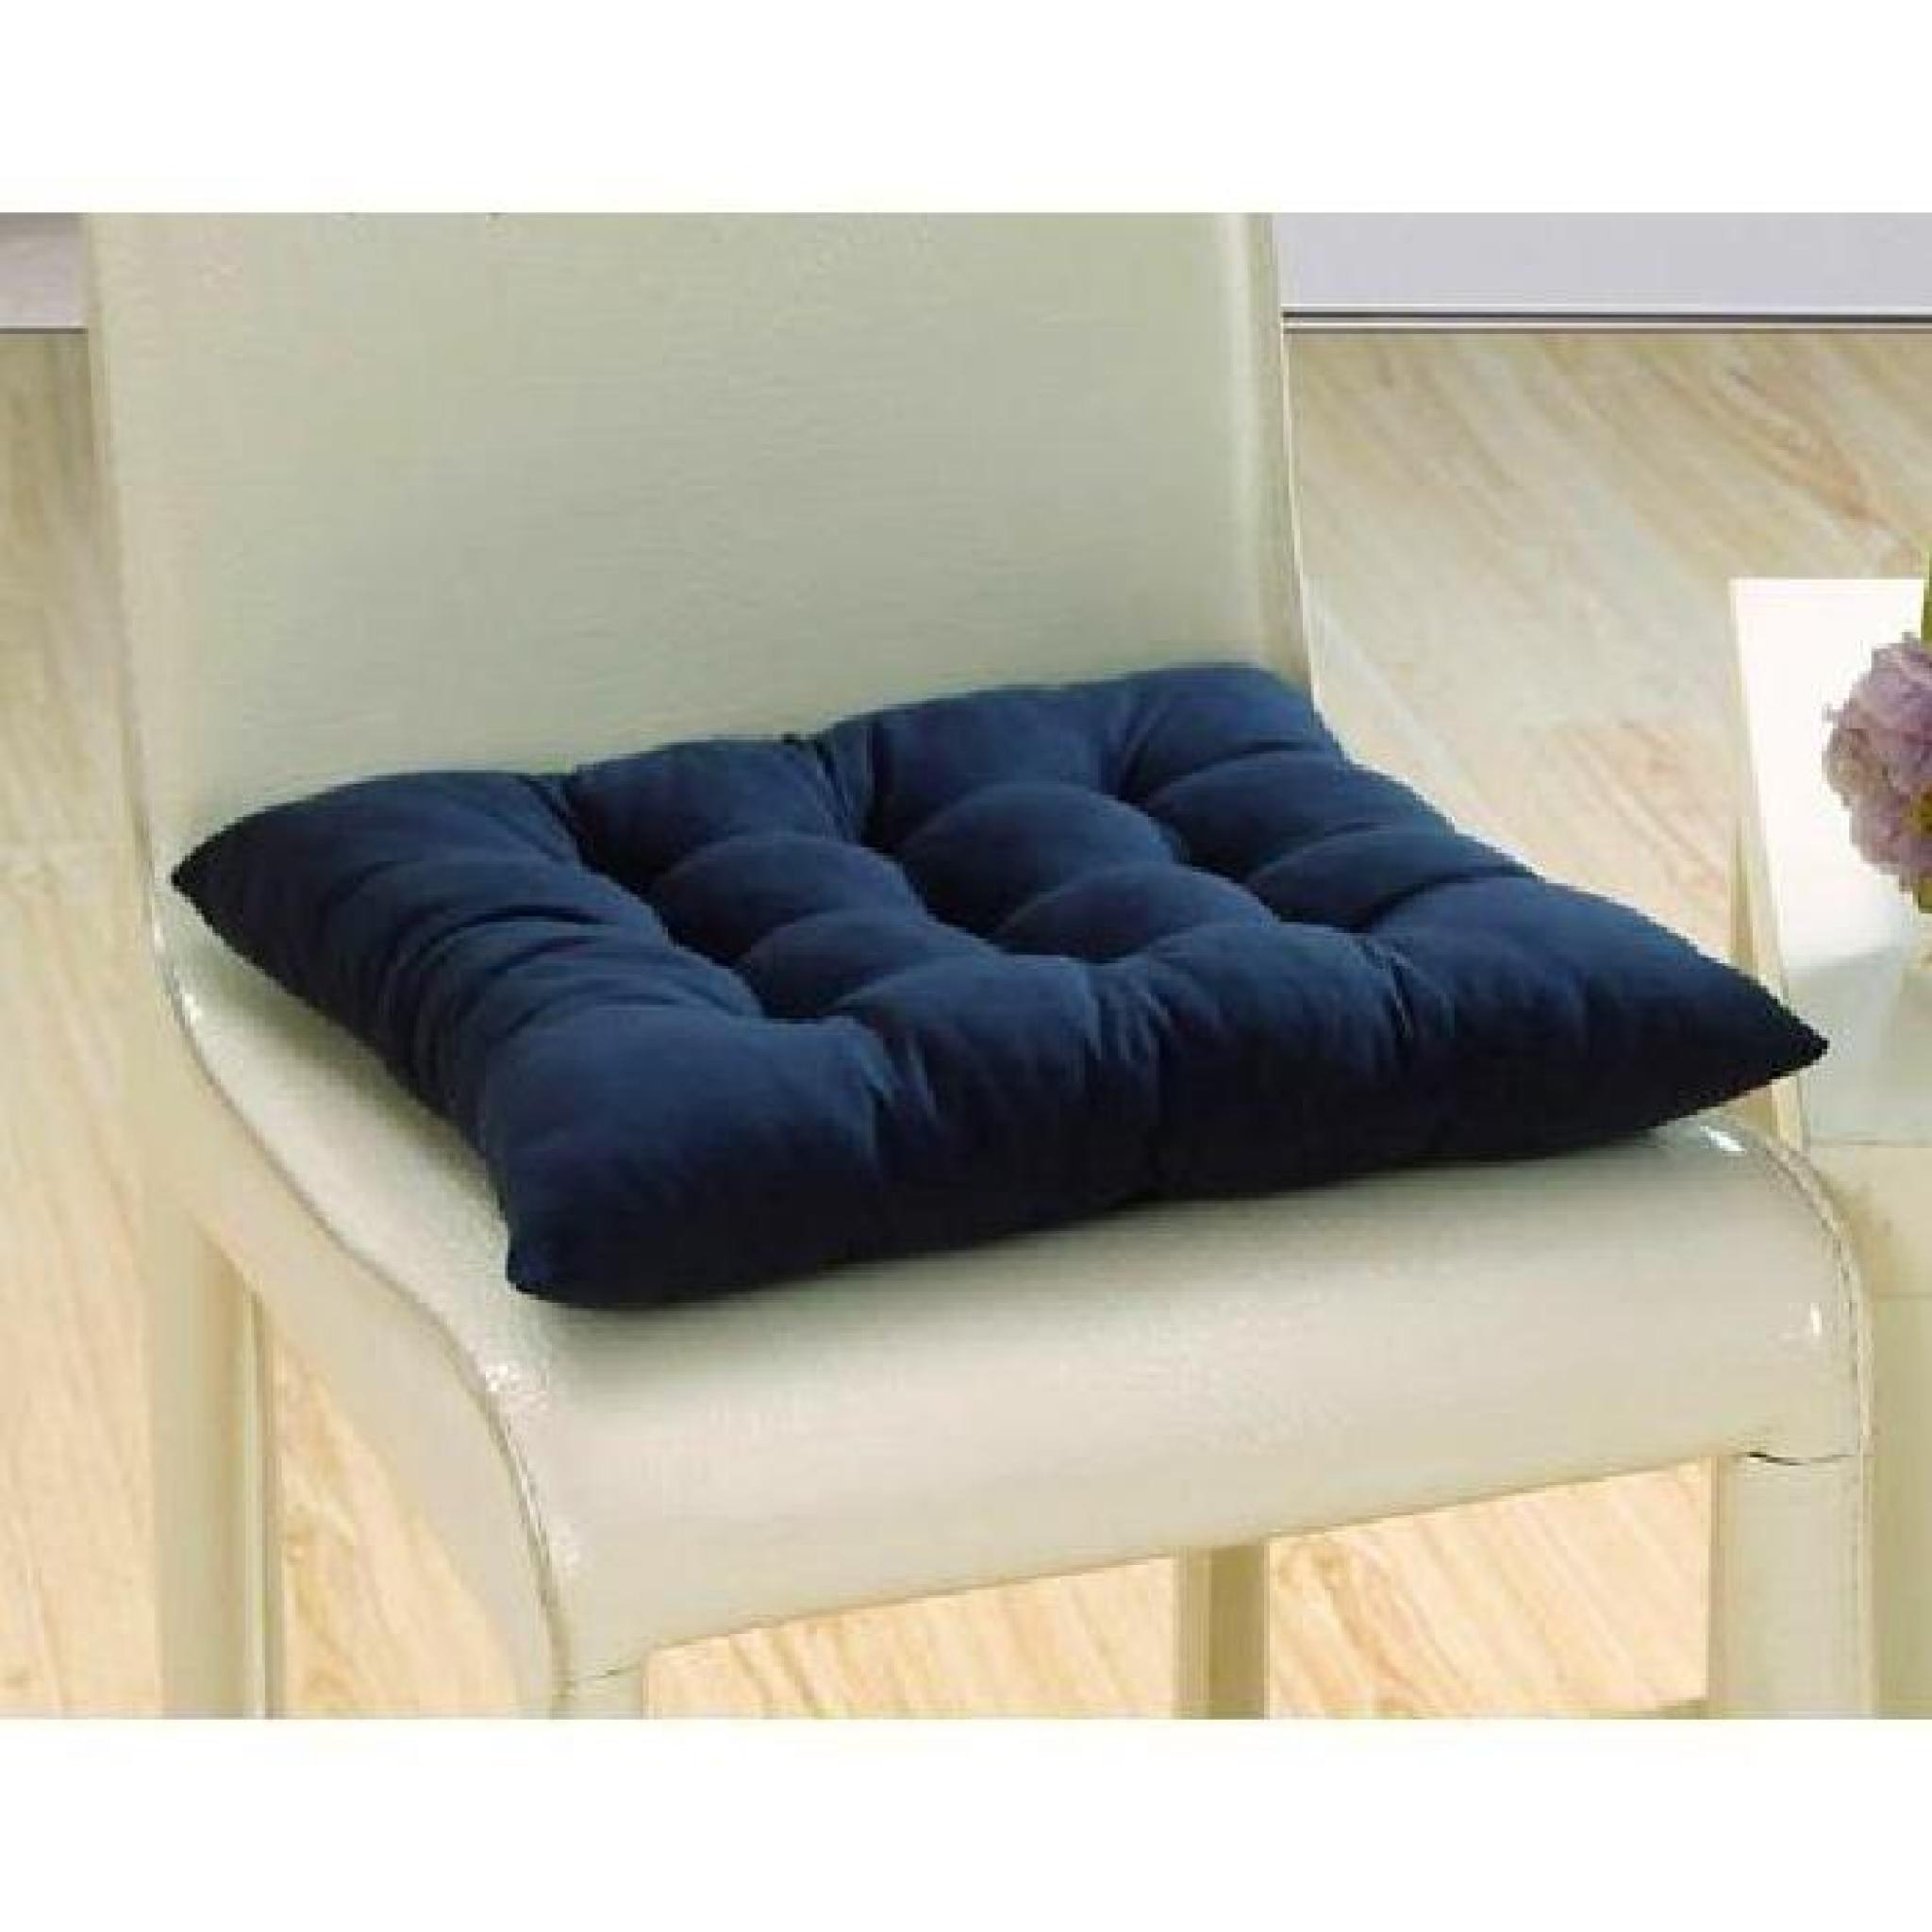 1*Galettes de chaise/ coussin de chaise à assise matelassée - double / 40x40cm - café pas cher